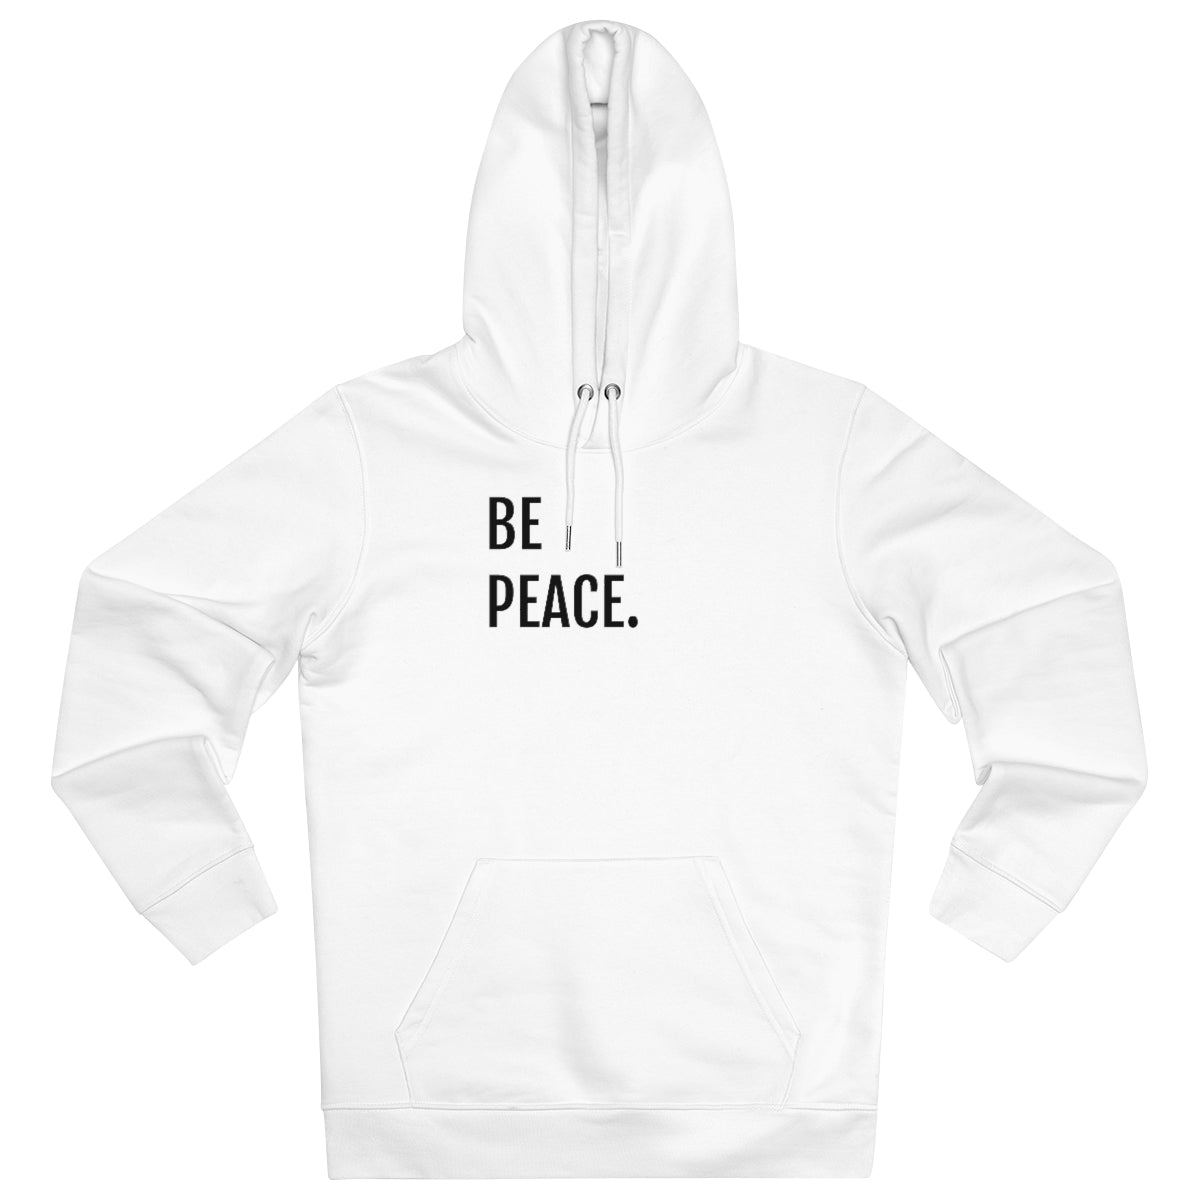 BE PEACE. - Unisex Cruiser Hoodie